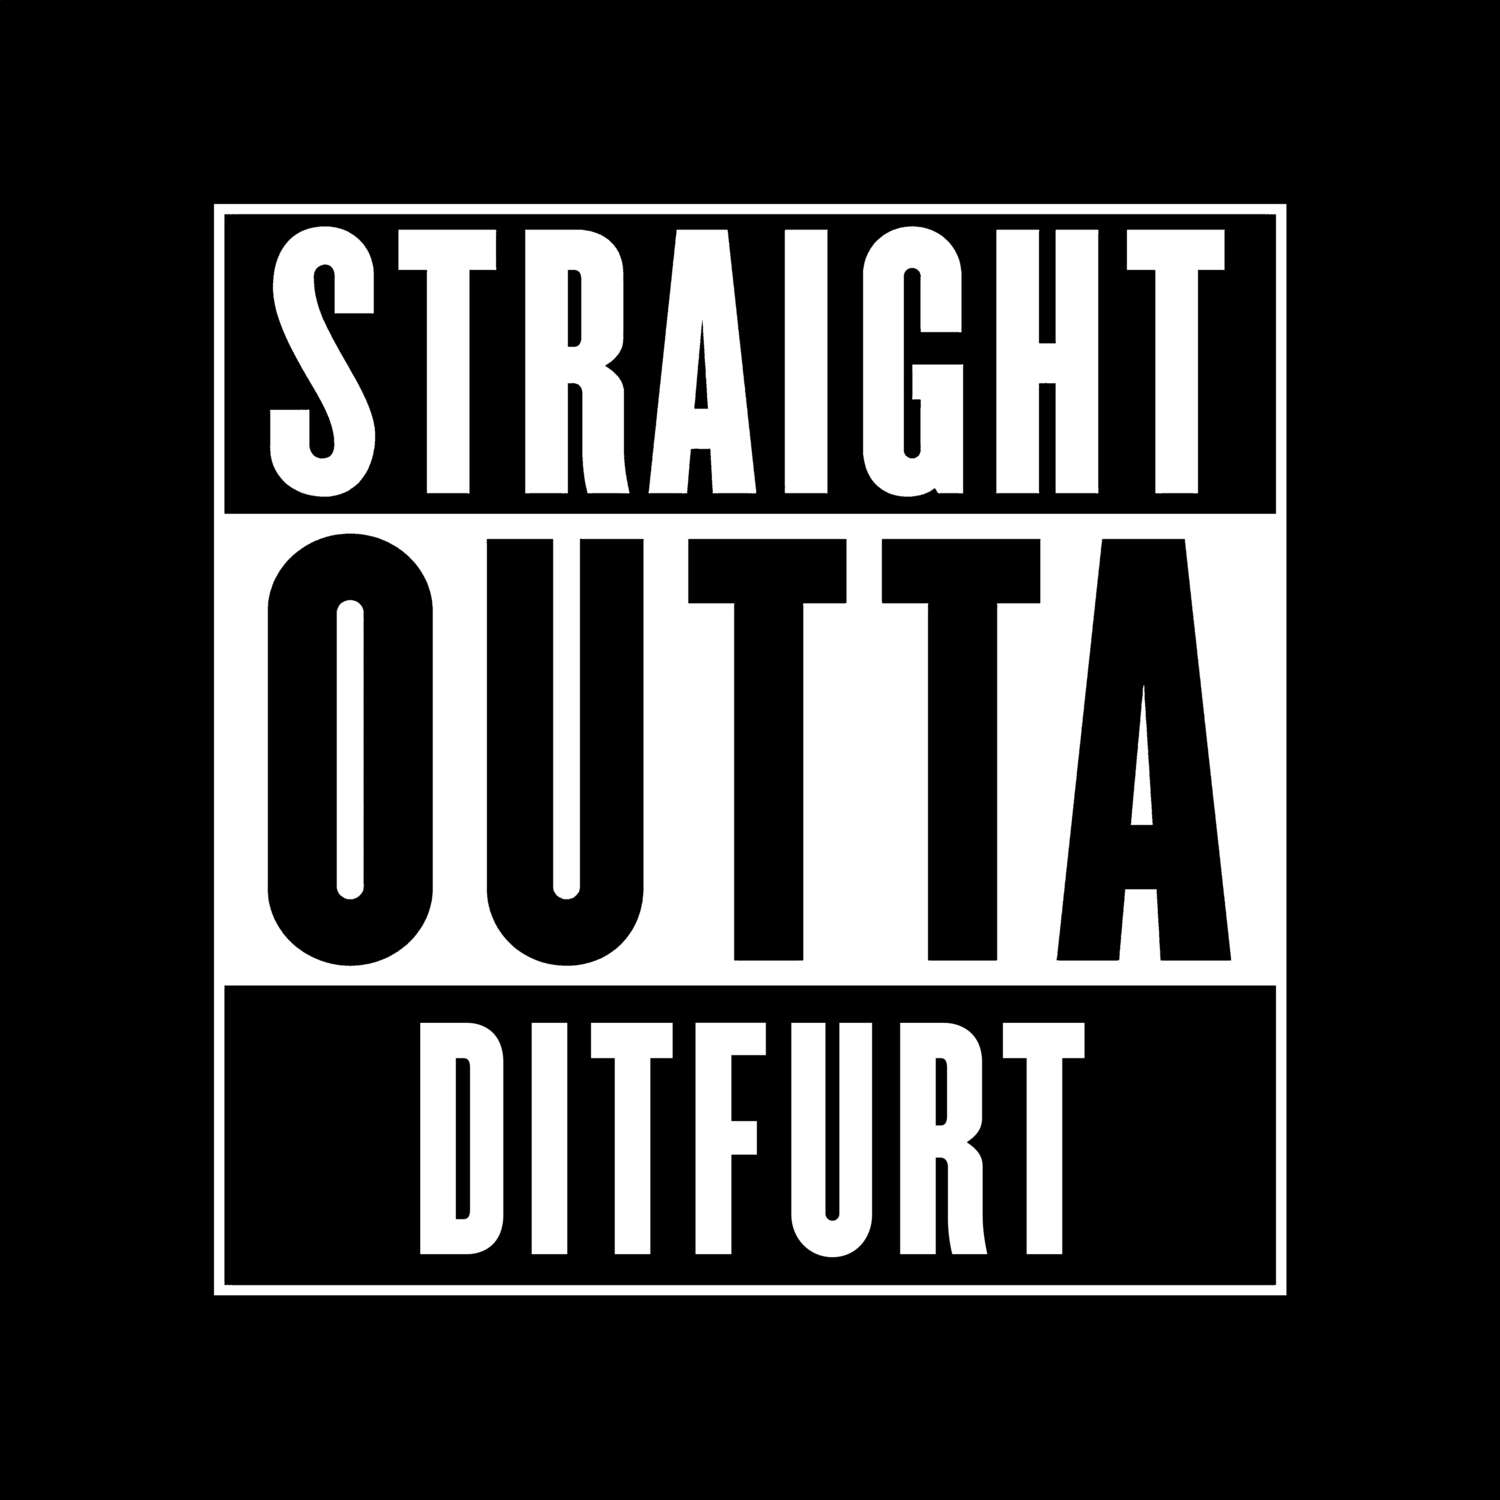 Ditfurt T-Shirt »Straight Outta«